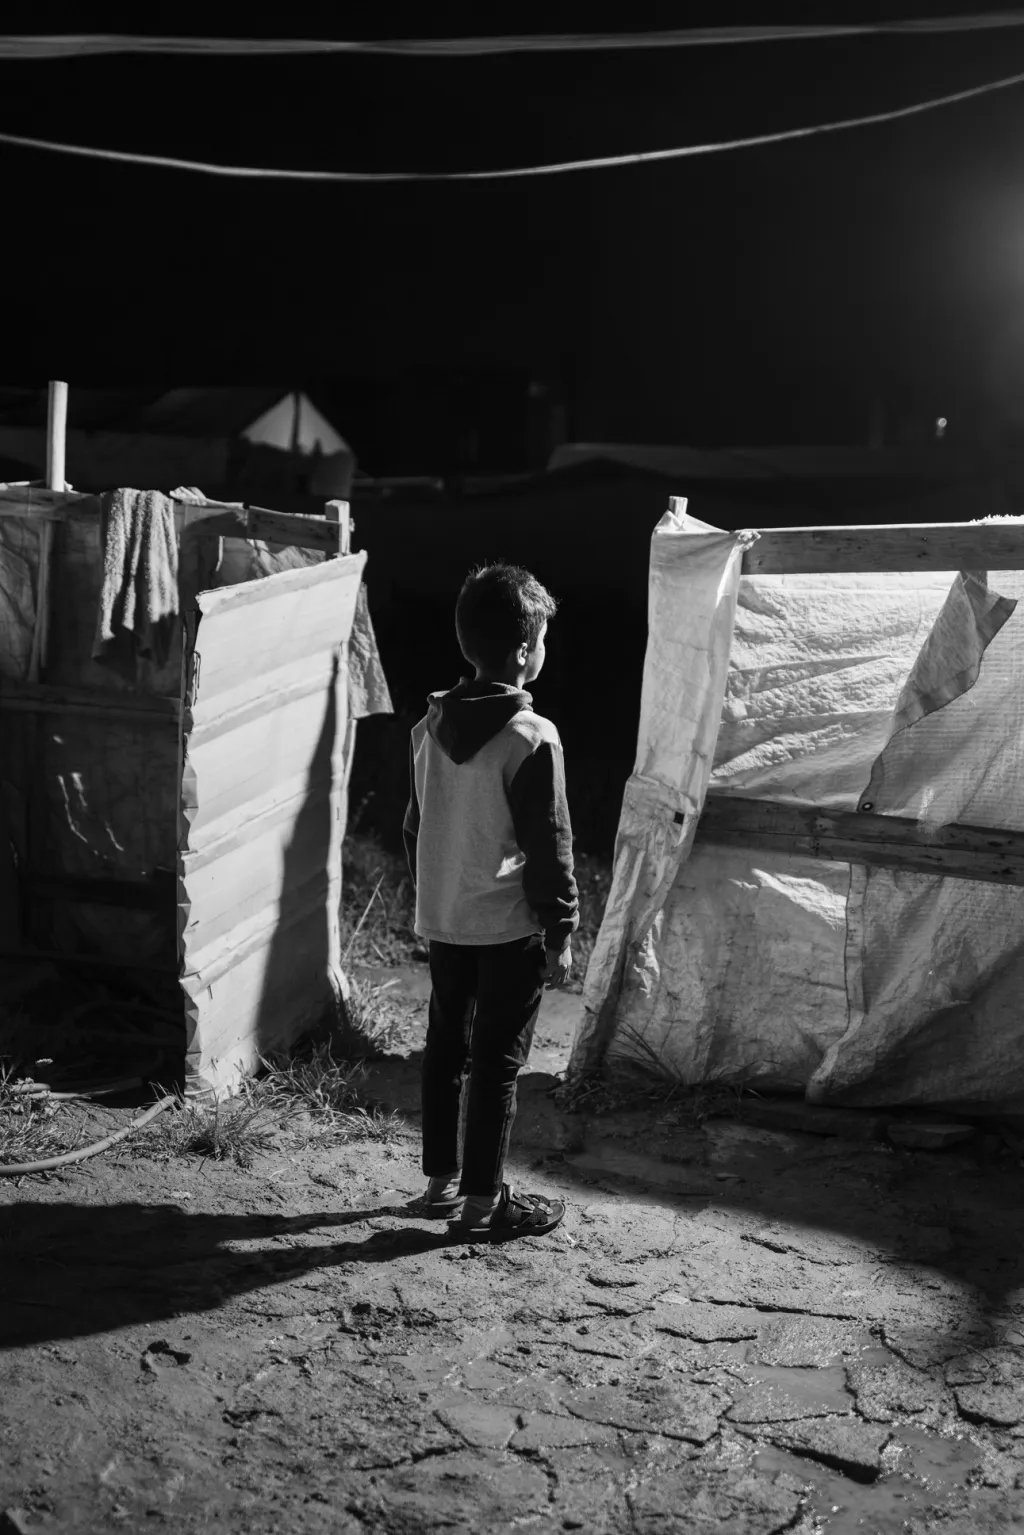 Když takzvaný Islámský stát v roce 2014 okupoval severní Irák, jeho bojovníci zmasakrovali kolem pěti tisíc Jezídů. Ženy a dívky byly uneseny a nuceny k sexuálnímu otroctví a chlapci museli cvičit jako vojáci. Zhruba půl milionu Jezídů bylo vysídleno, mnozí nyní žijí v uprchlických táborech v Iráku